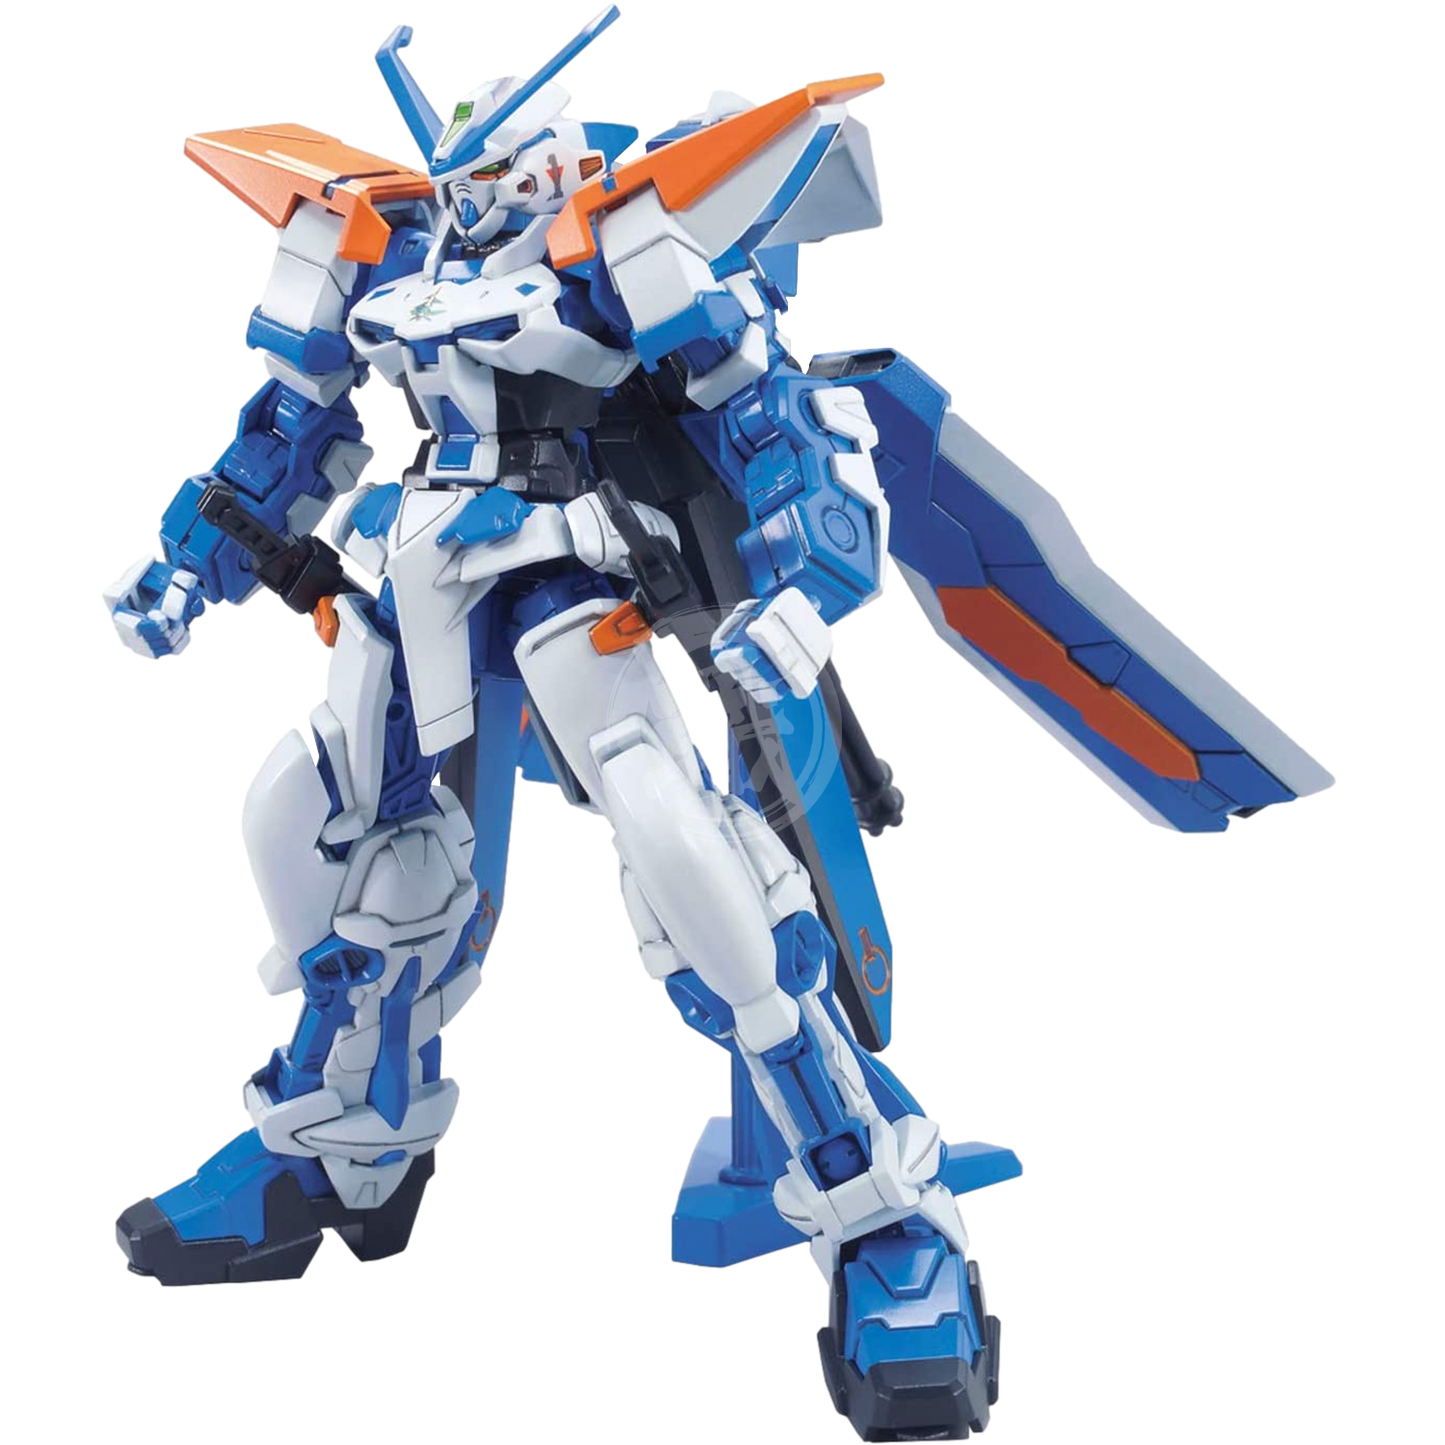 HG Gundam Astray Blue Frame Second L - ShokuninGunpla